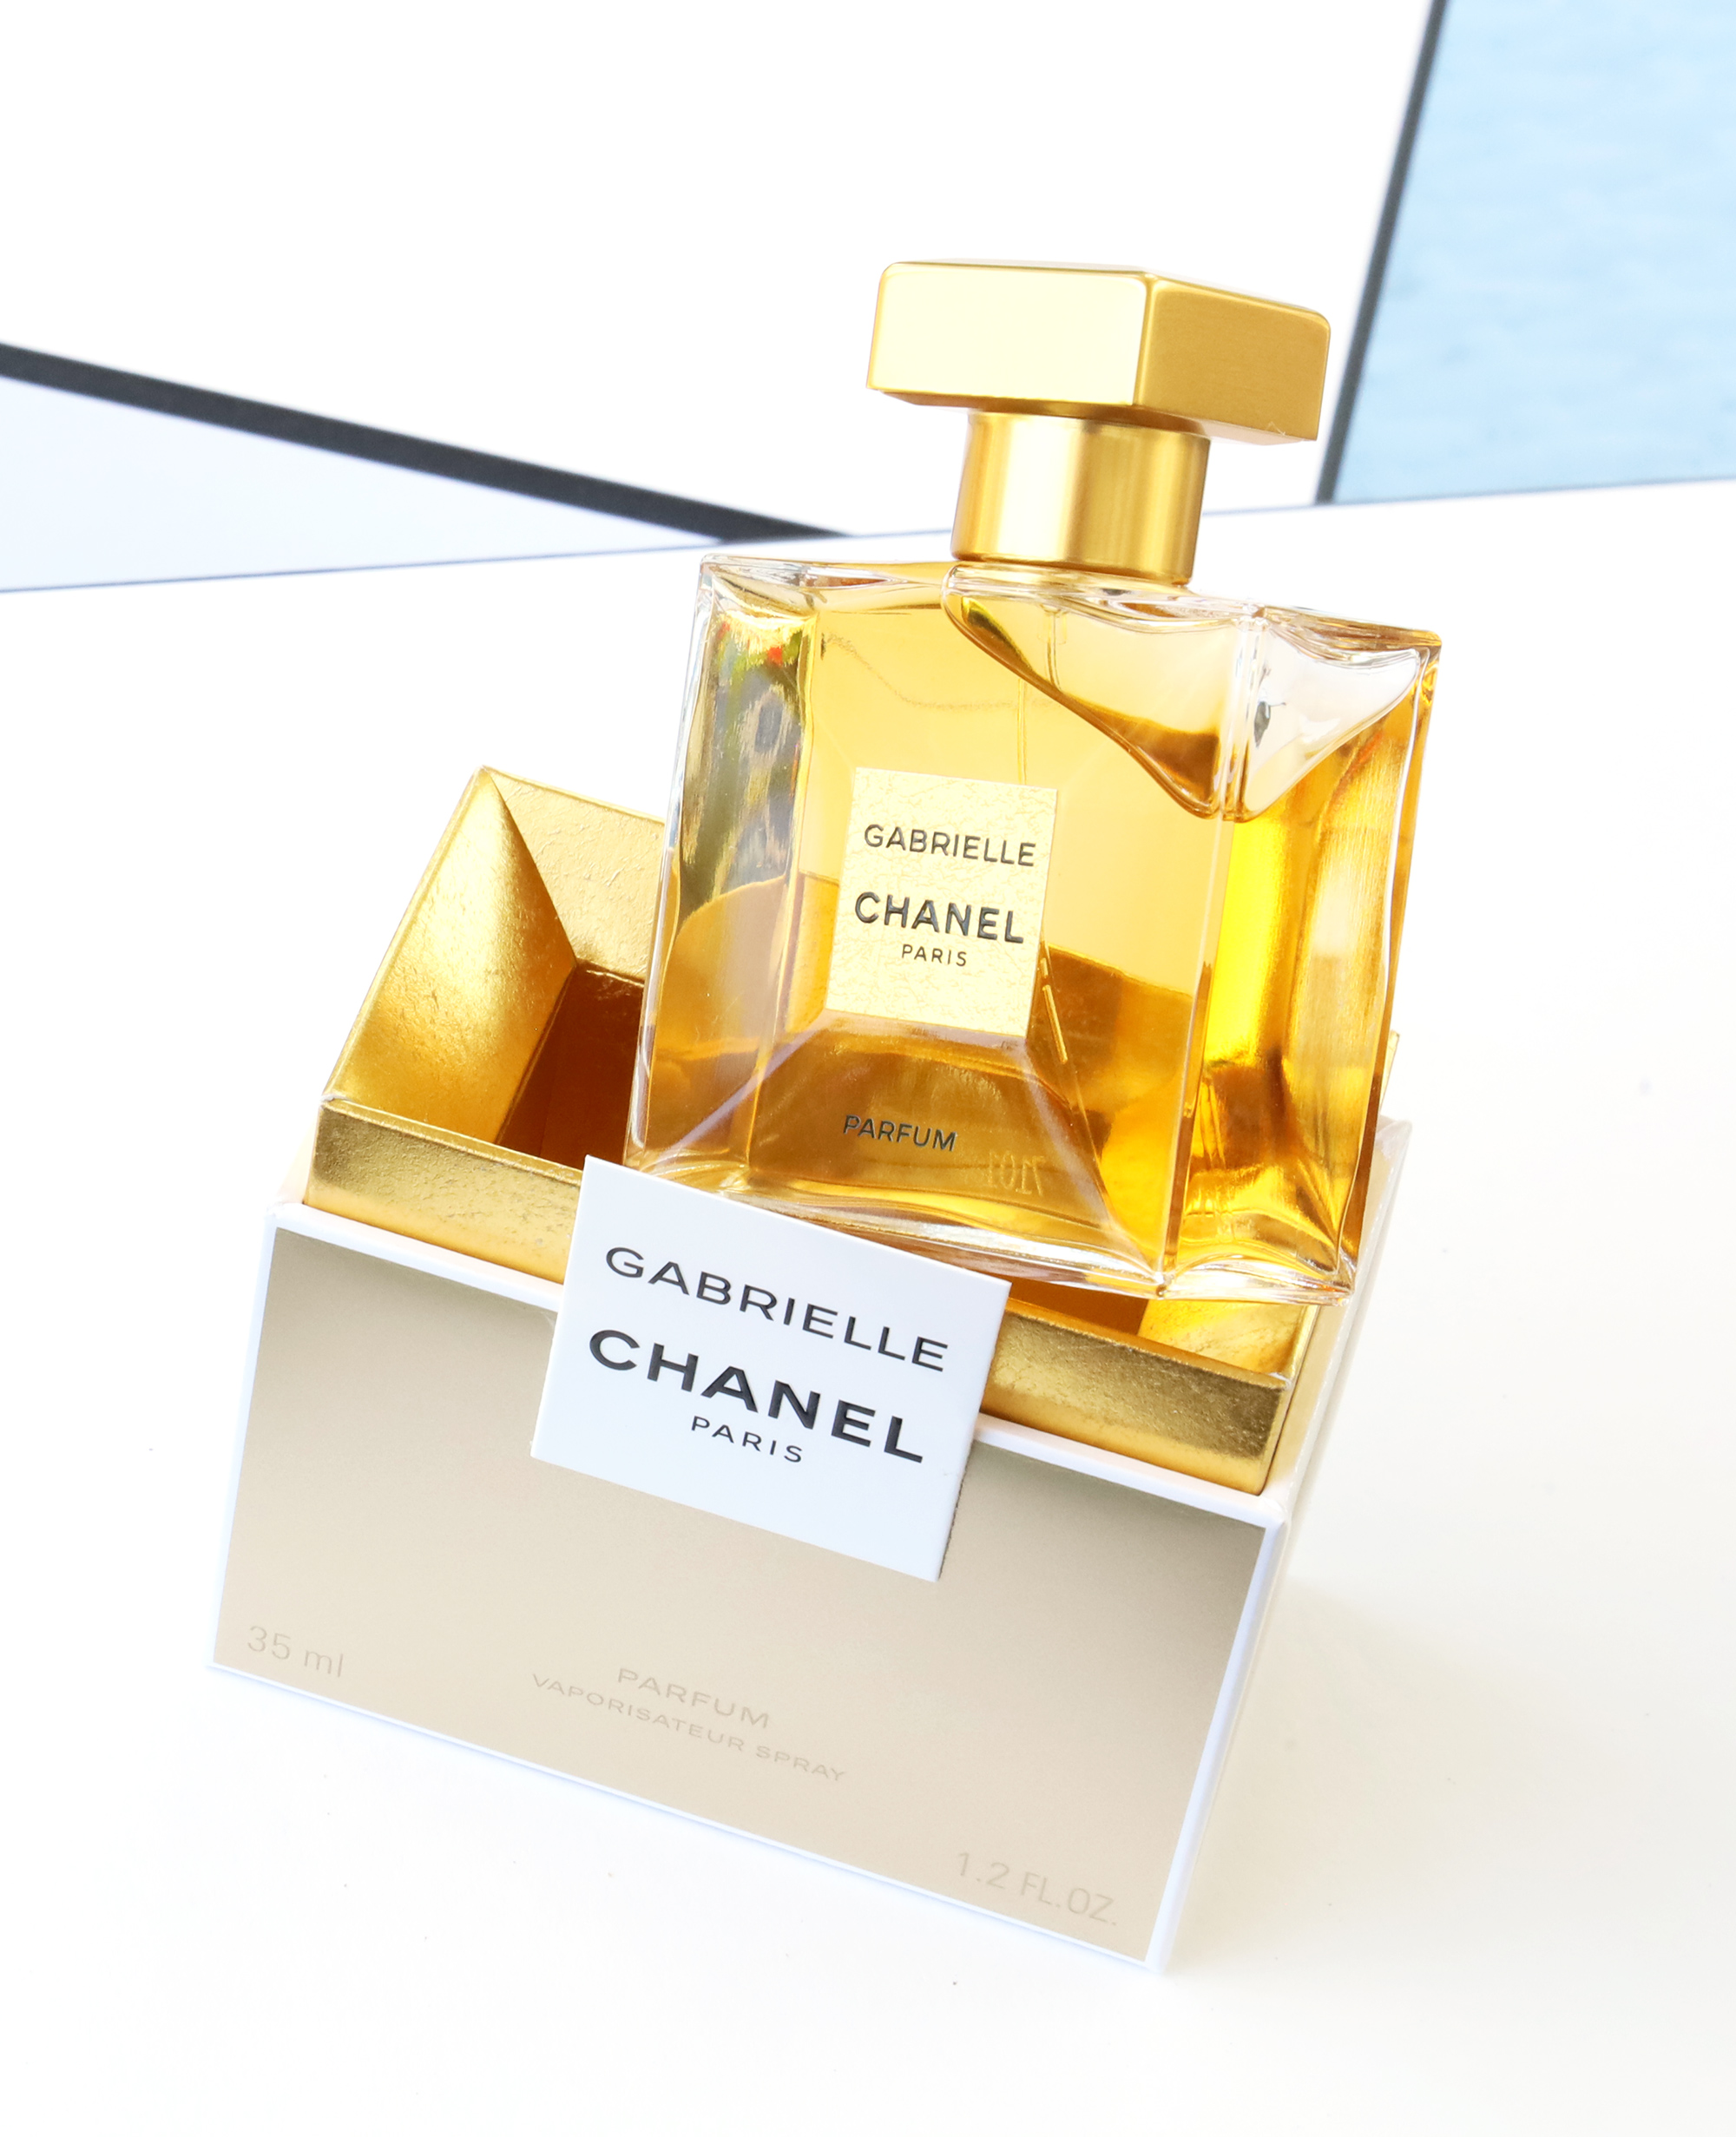 GABRIELLE CHANEL Parfum Spray - 1.2 FL. OZ.